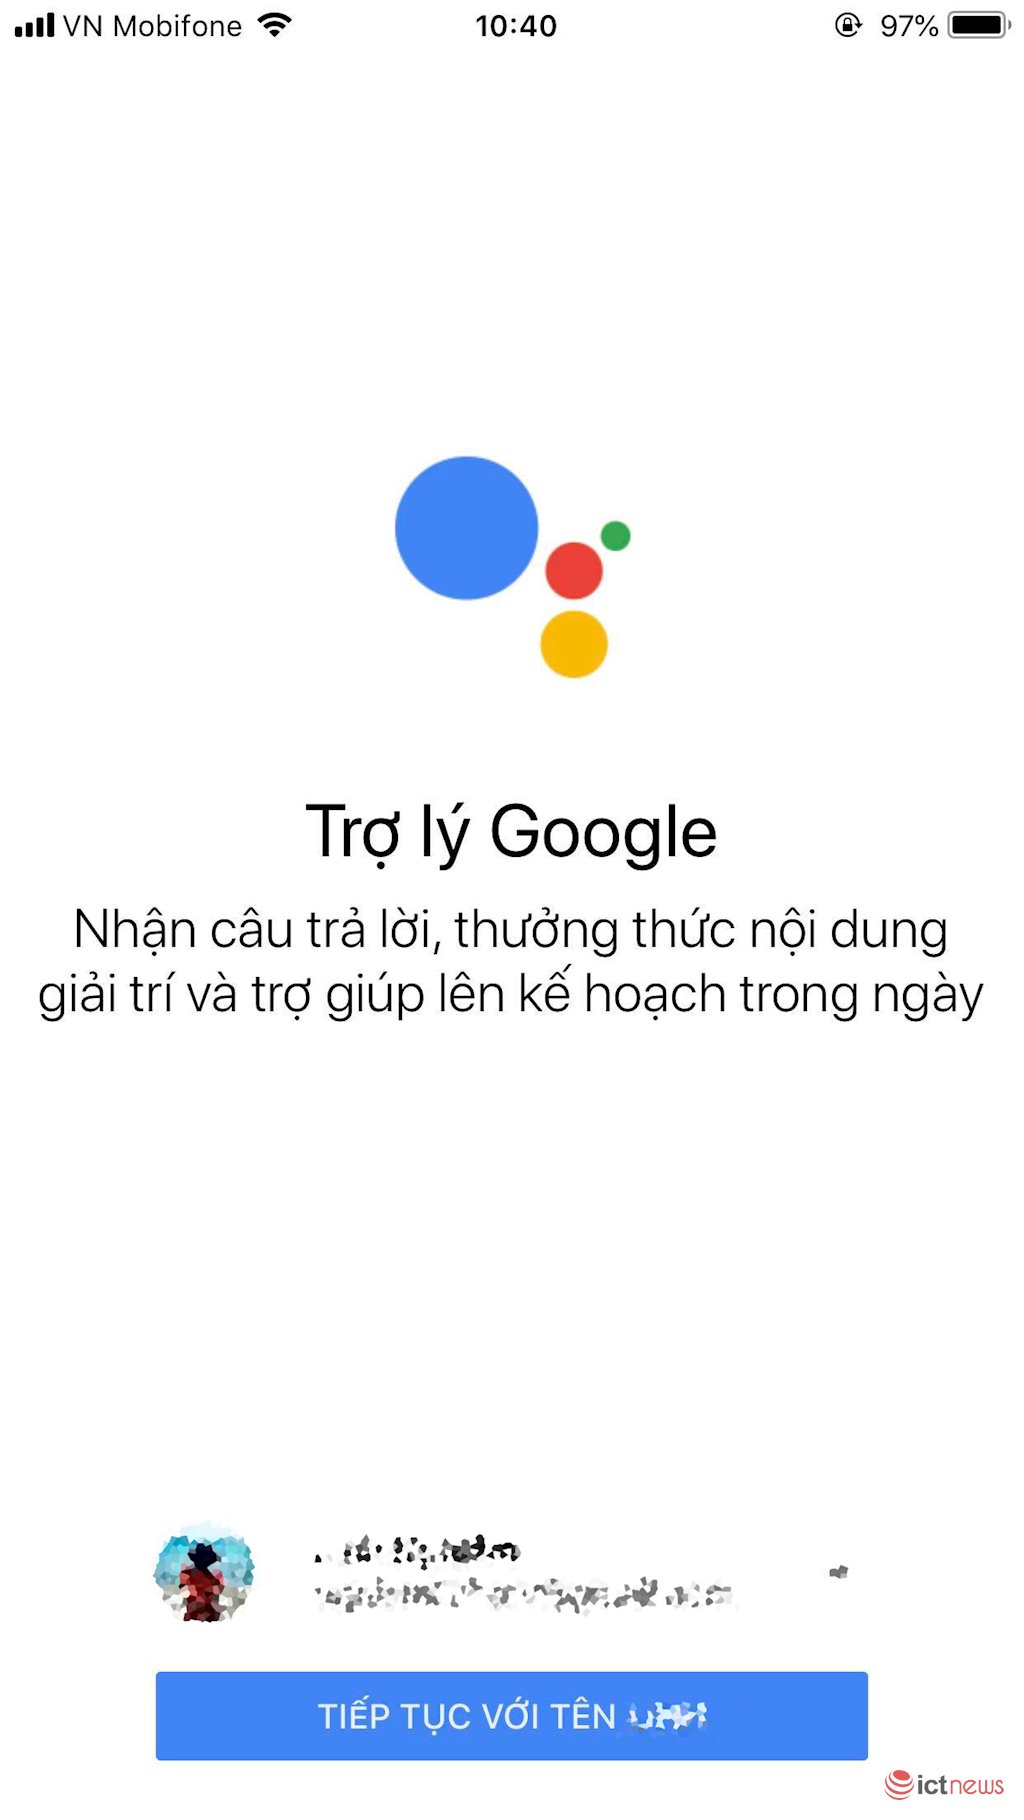 Google Assistant tiếng Việt chính thức cho tải về iPhone tại Việt Nam